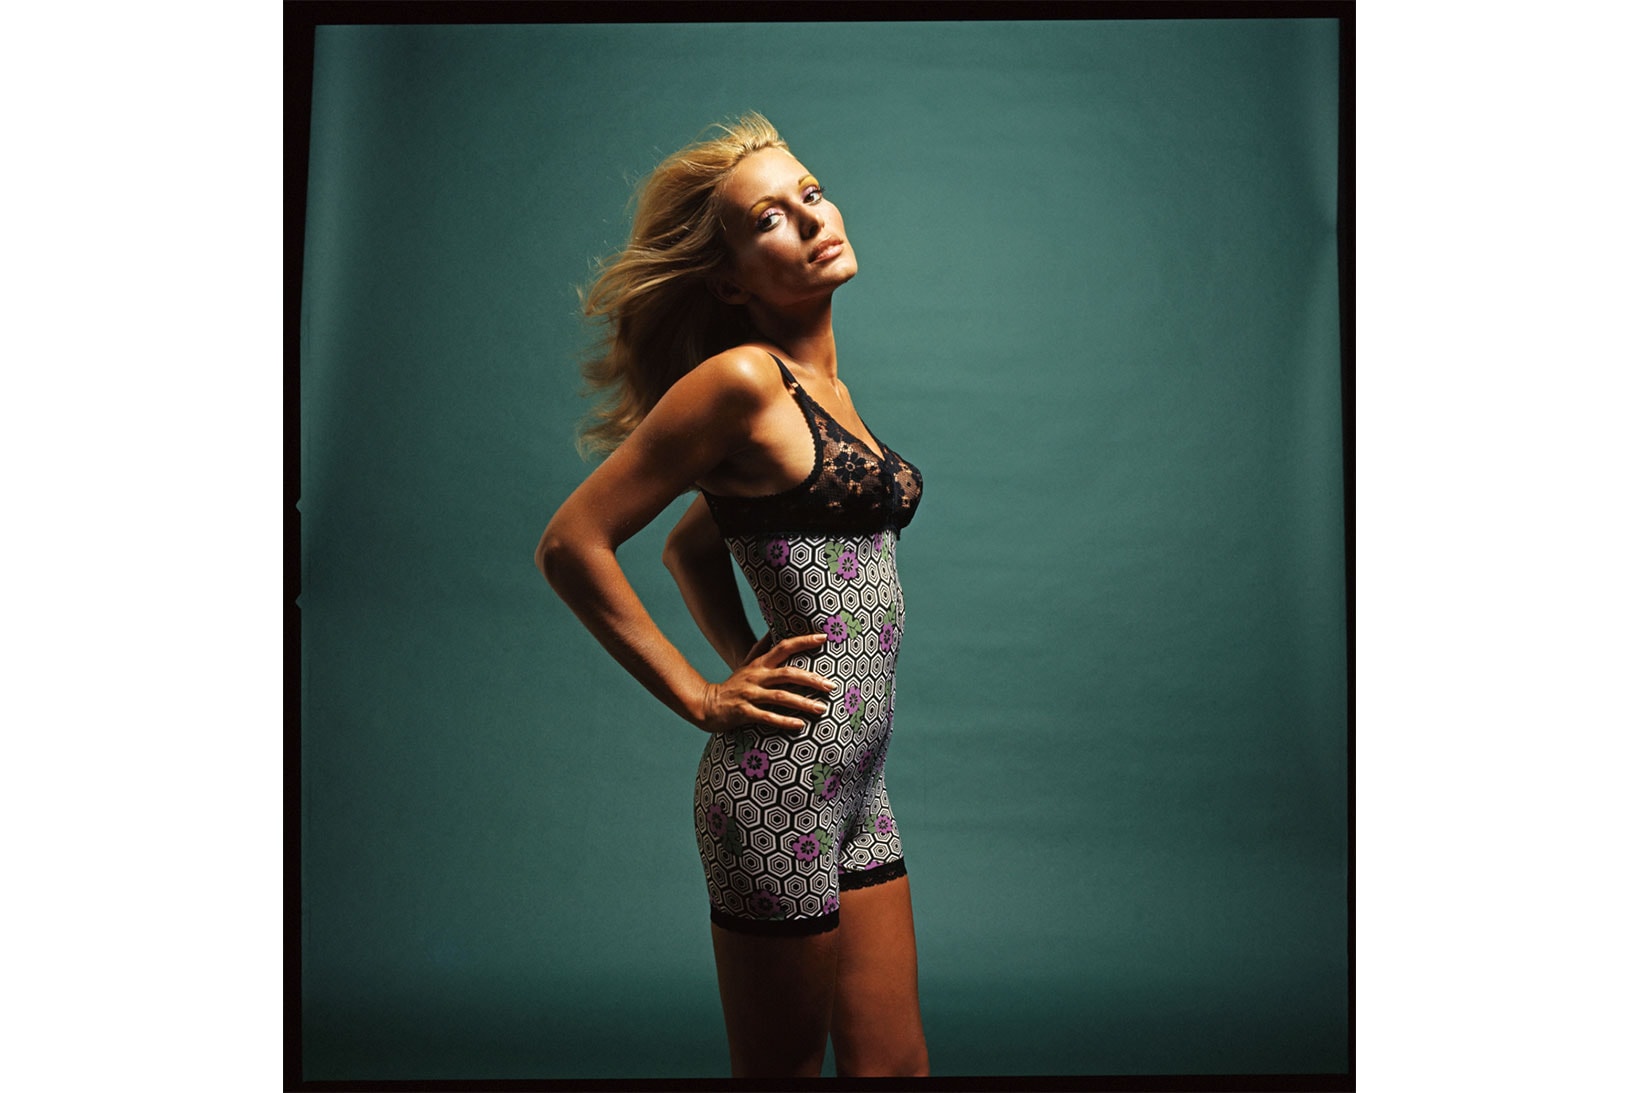 la perla campaign images archives 1950s 2000s lingerie underwear 